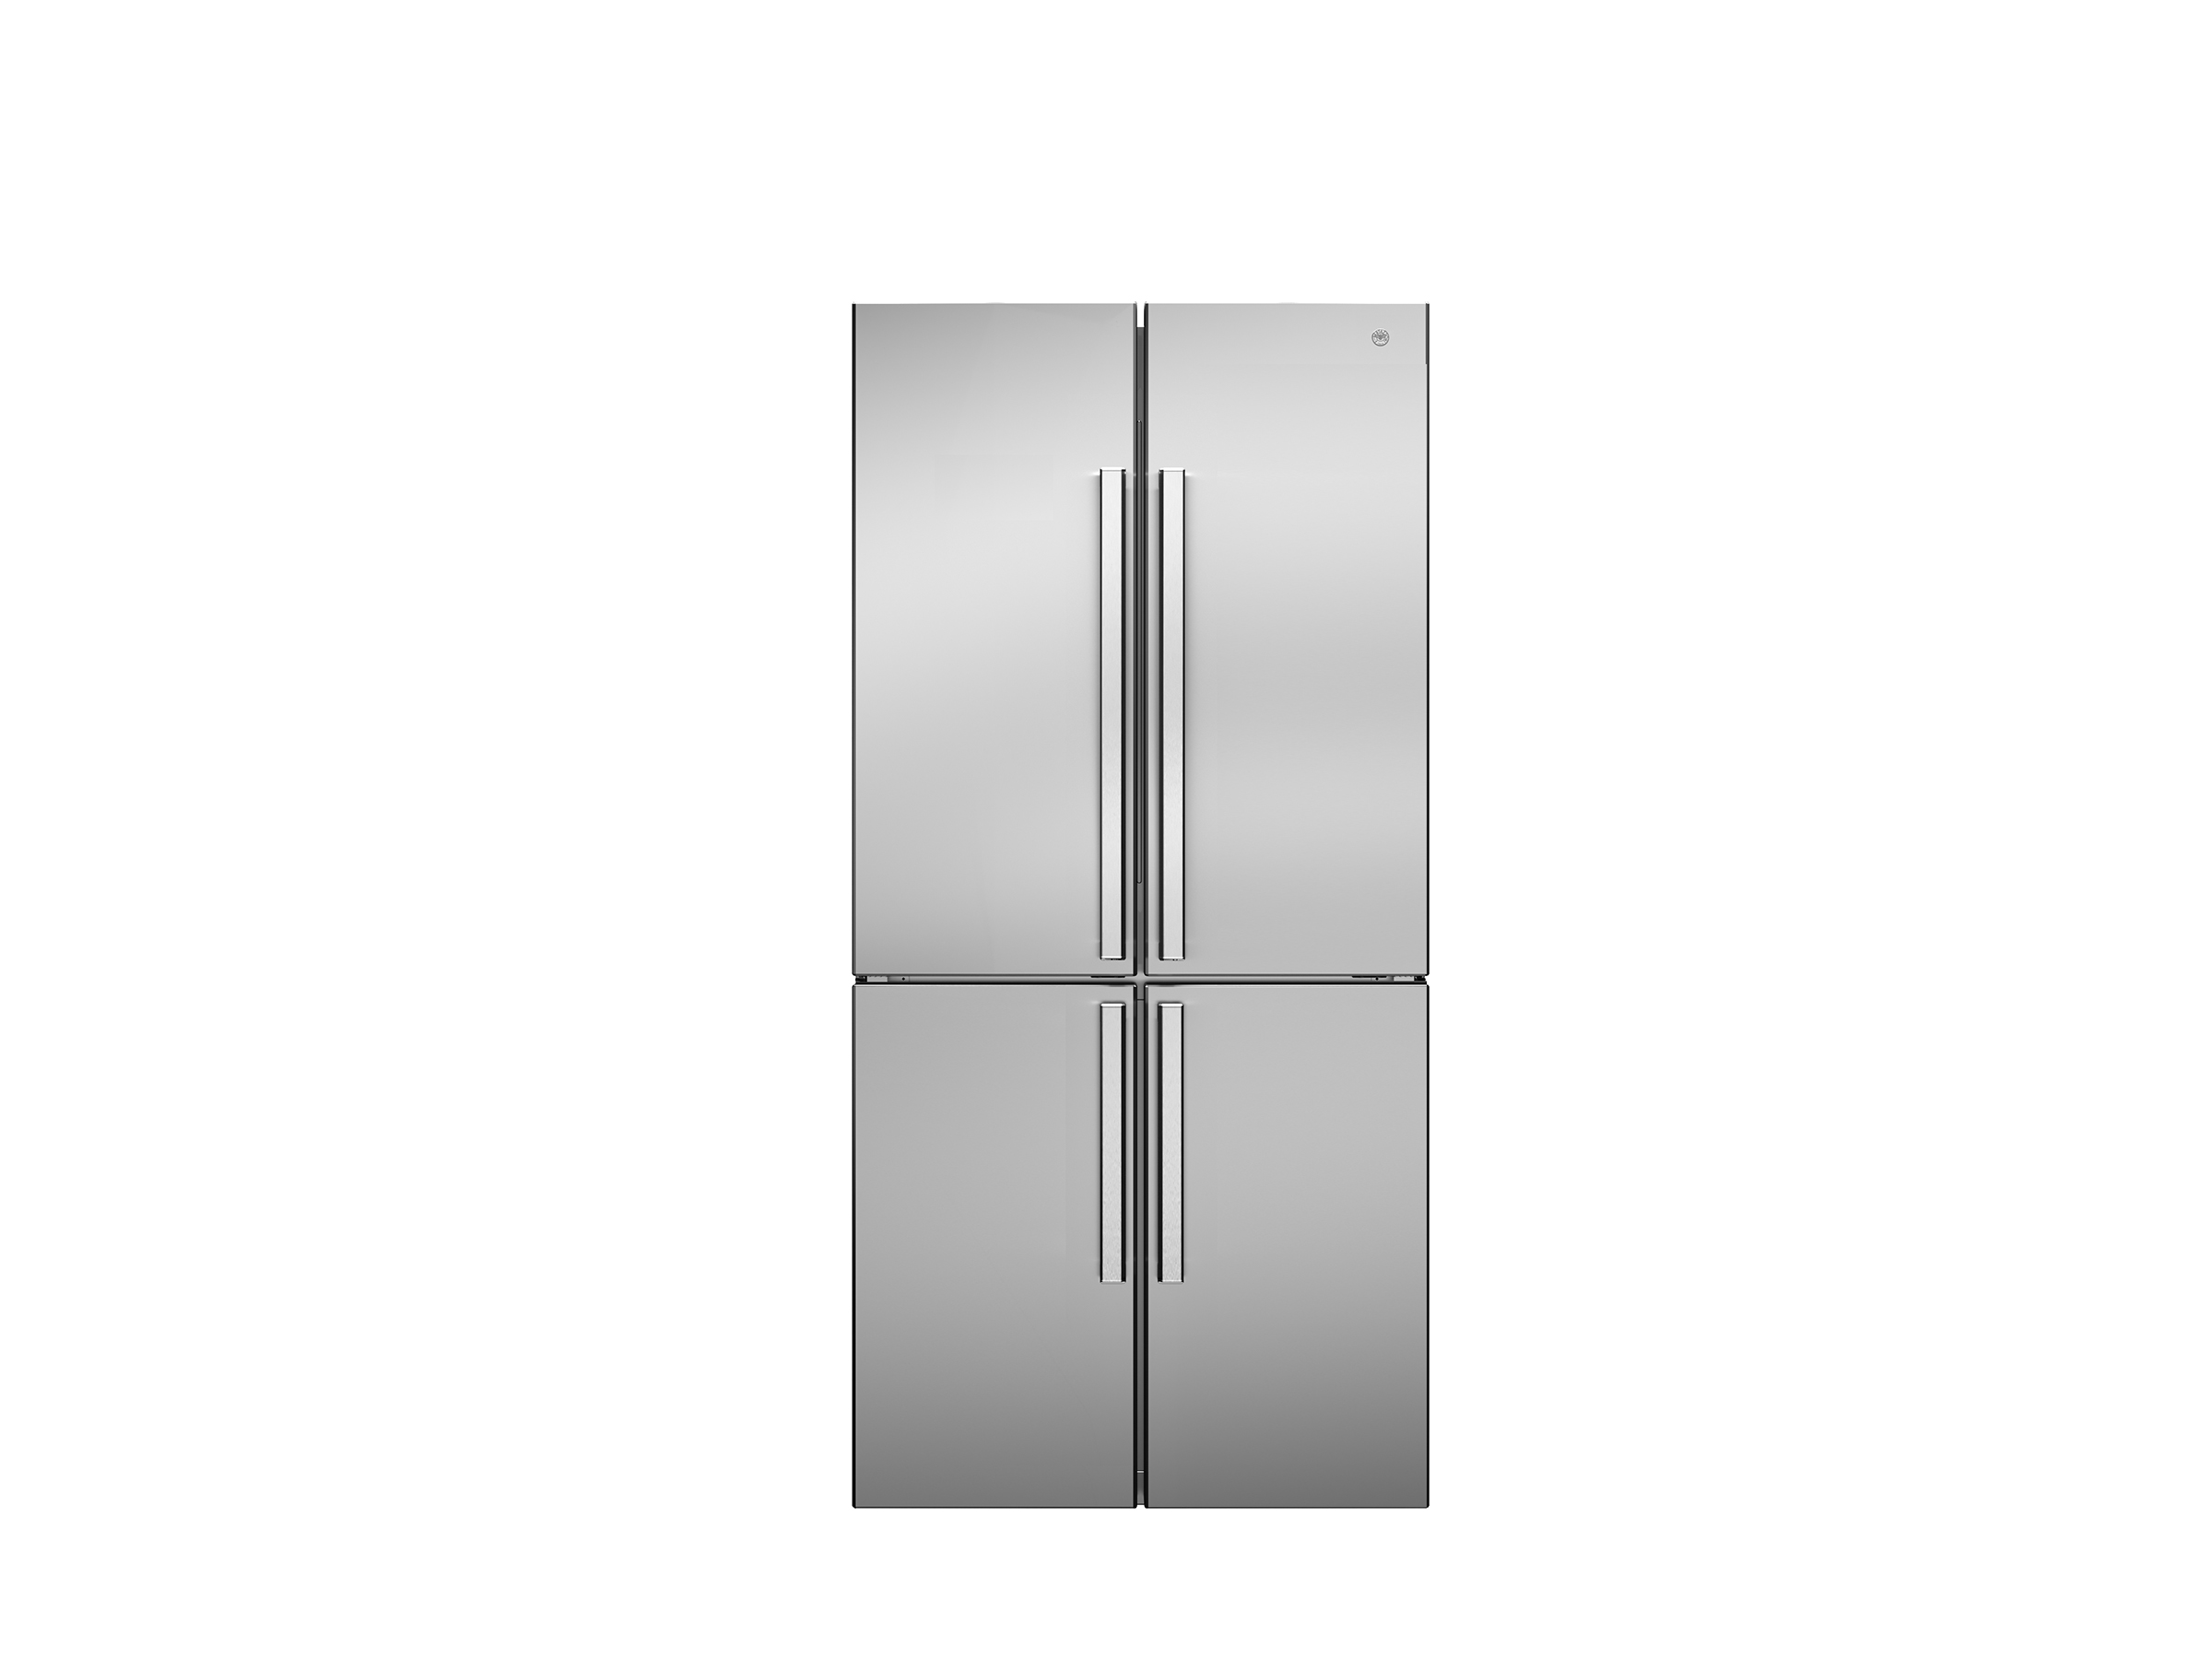 84 cm freestanding cross-door refrigerator stainless steel 